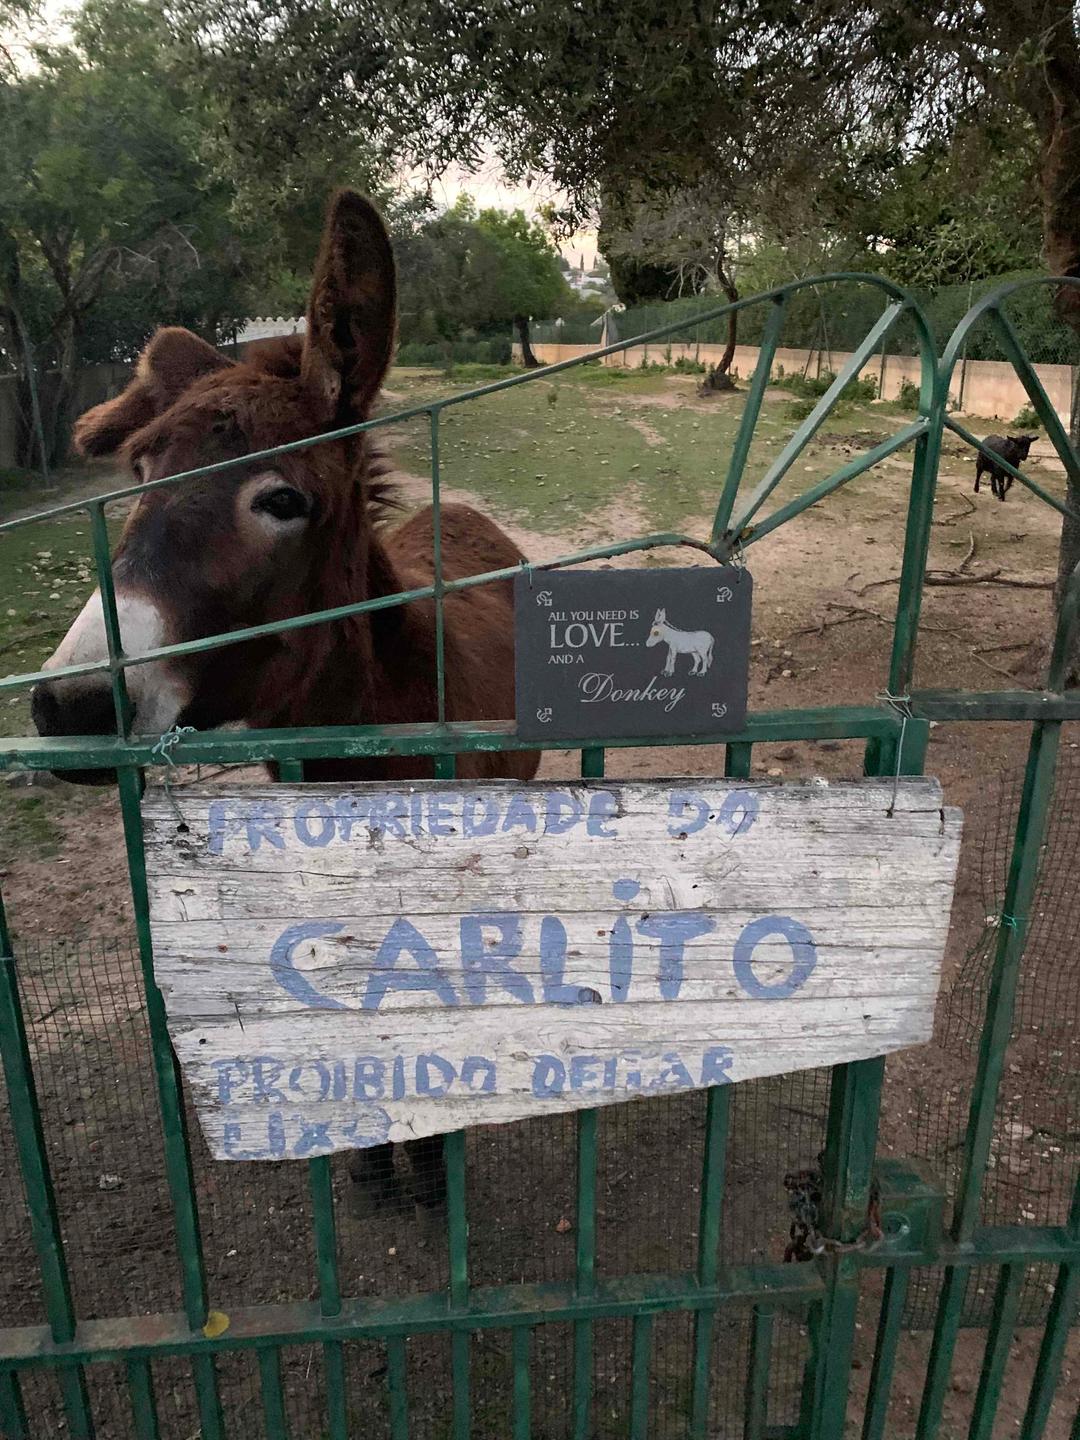 Carlitos Donkeys